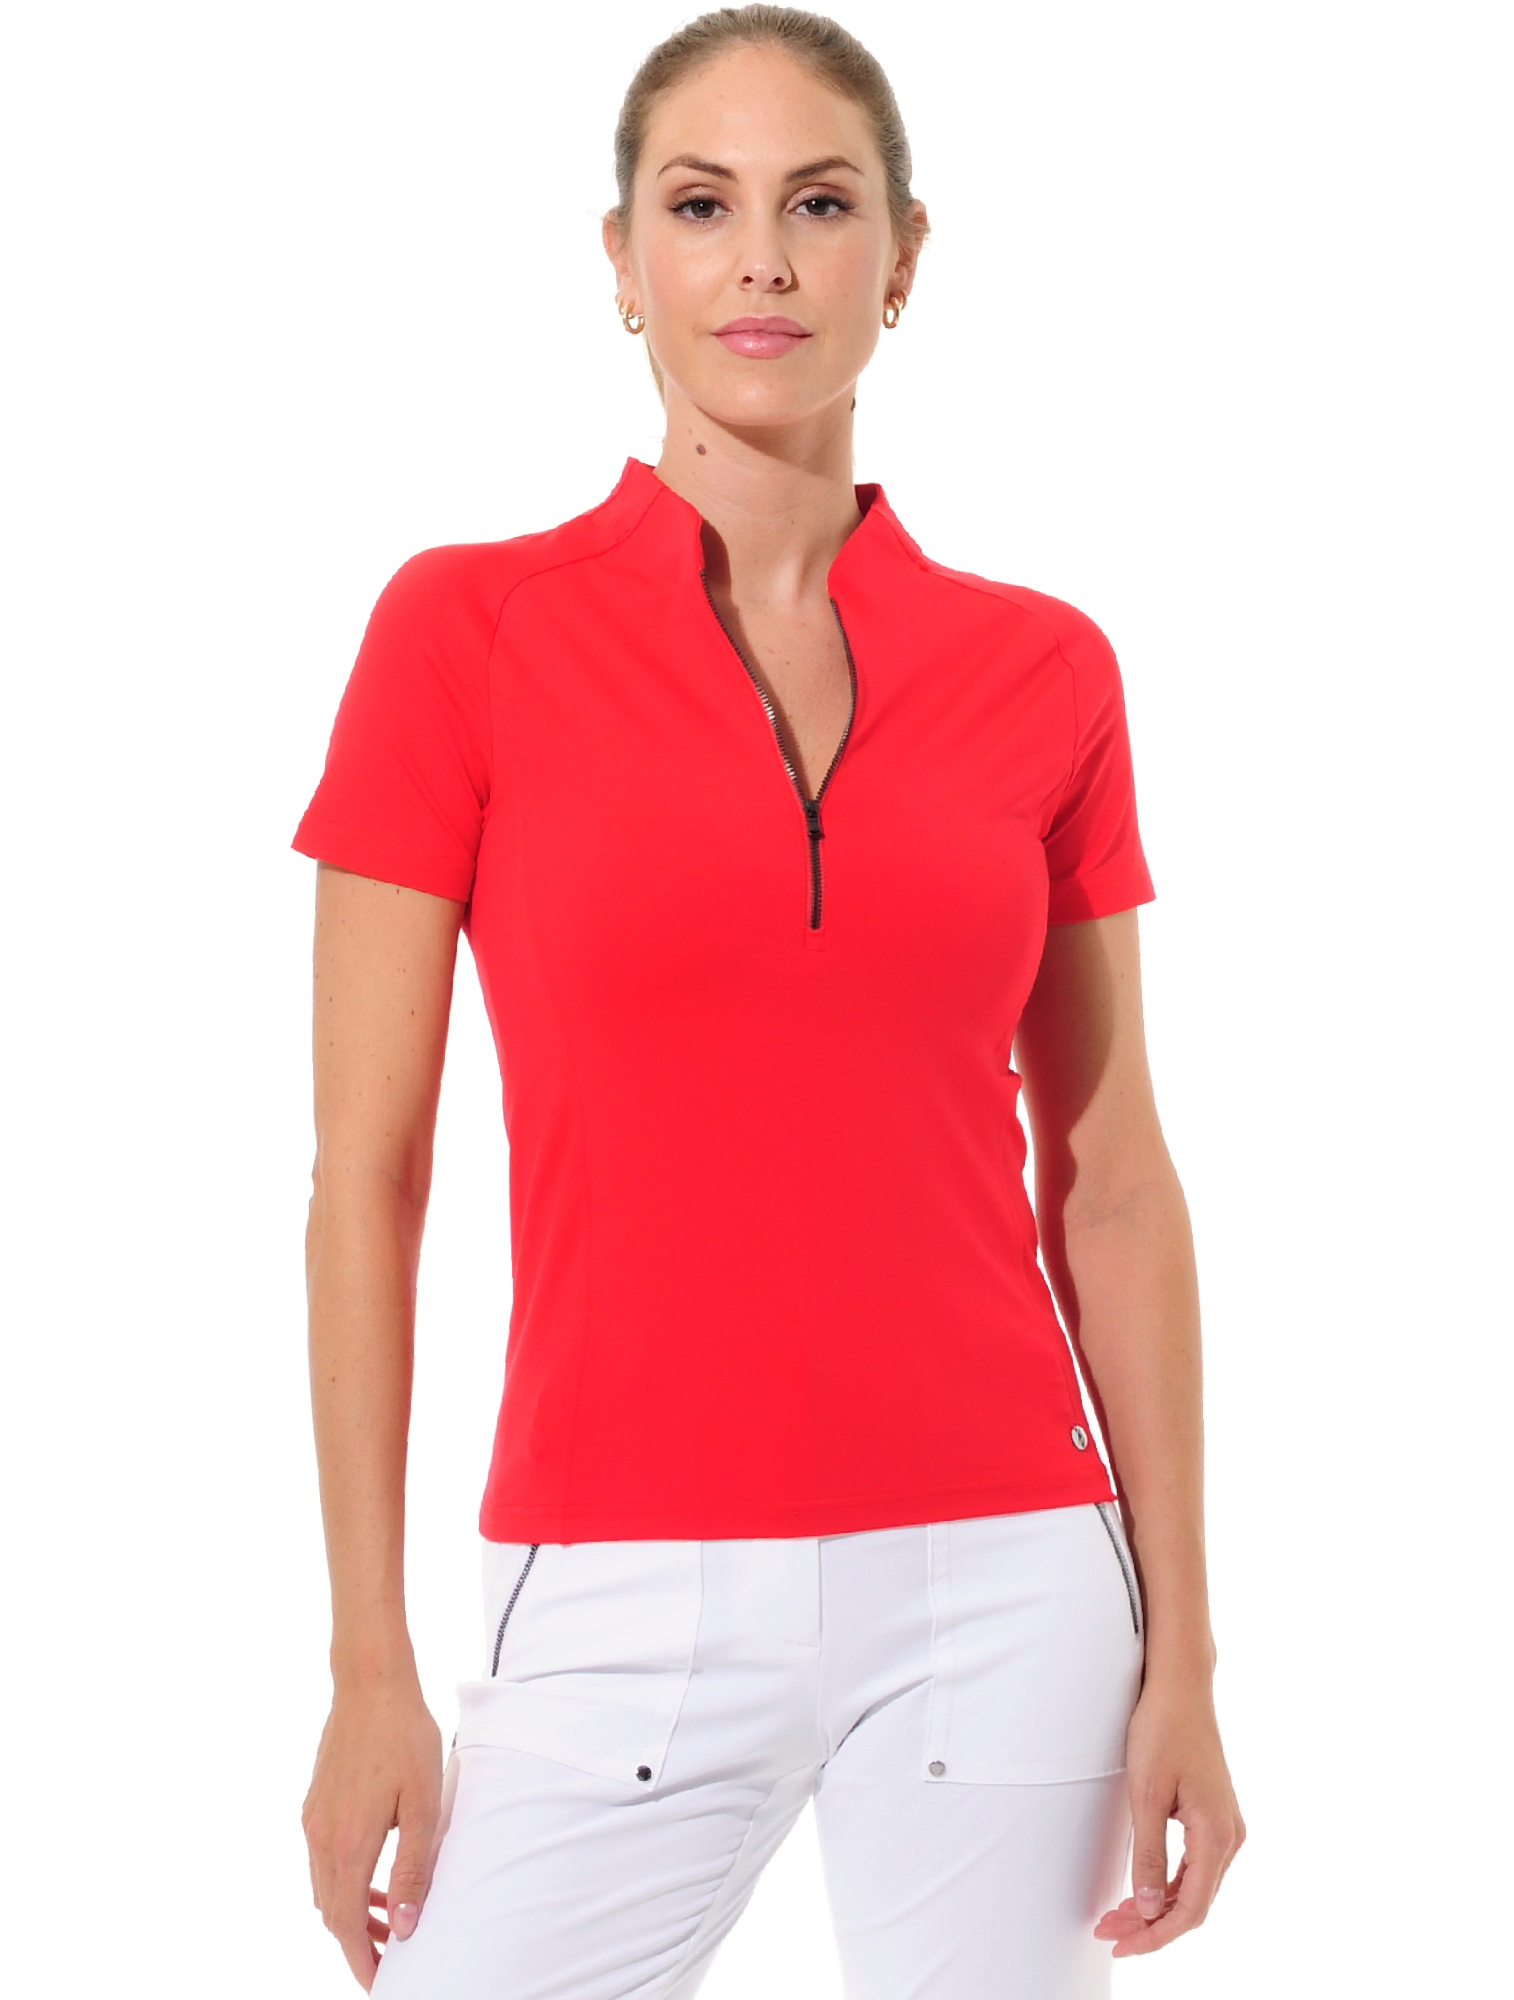 MDC Polo Damen Shirts / Polos Damen Golfbekleidung golfshop.de